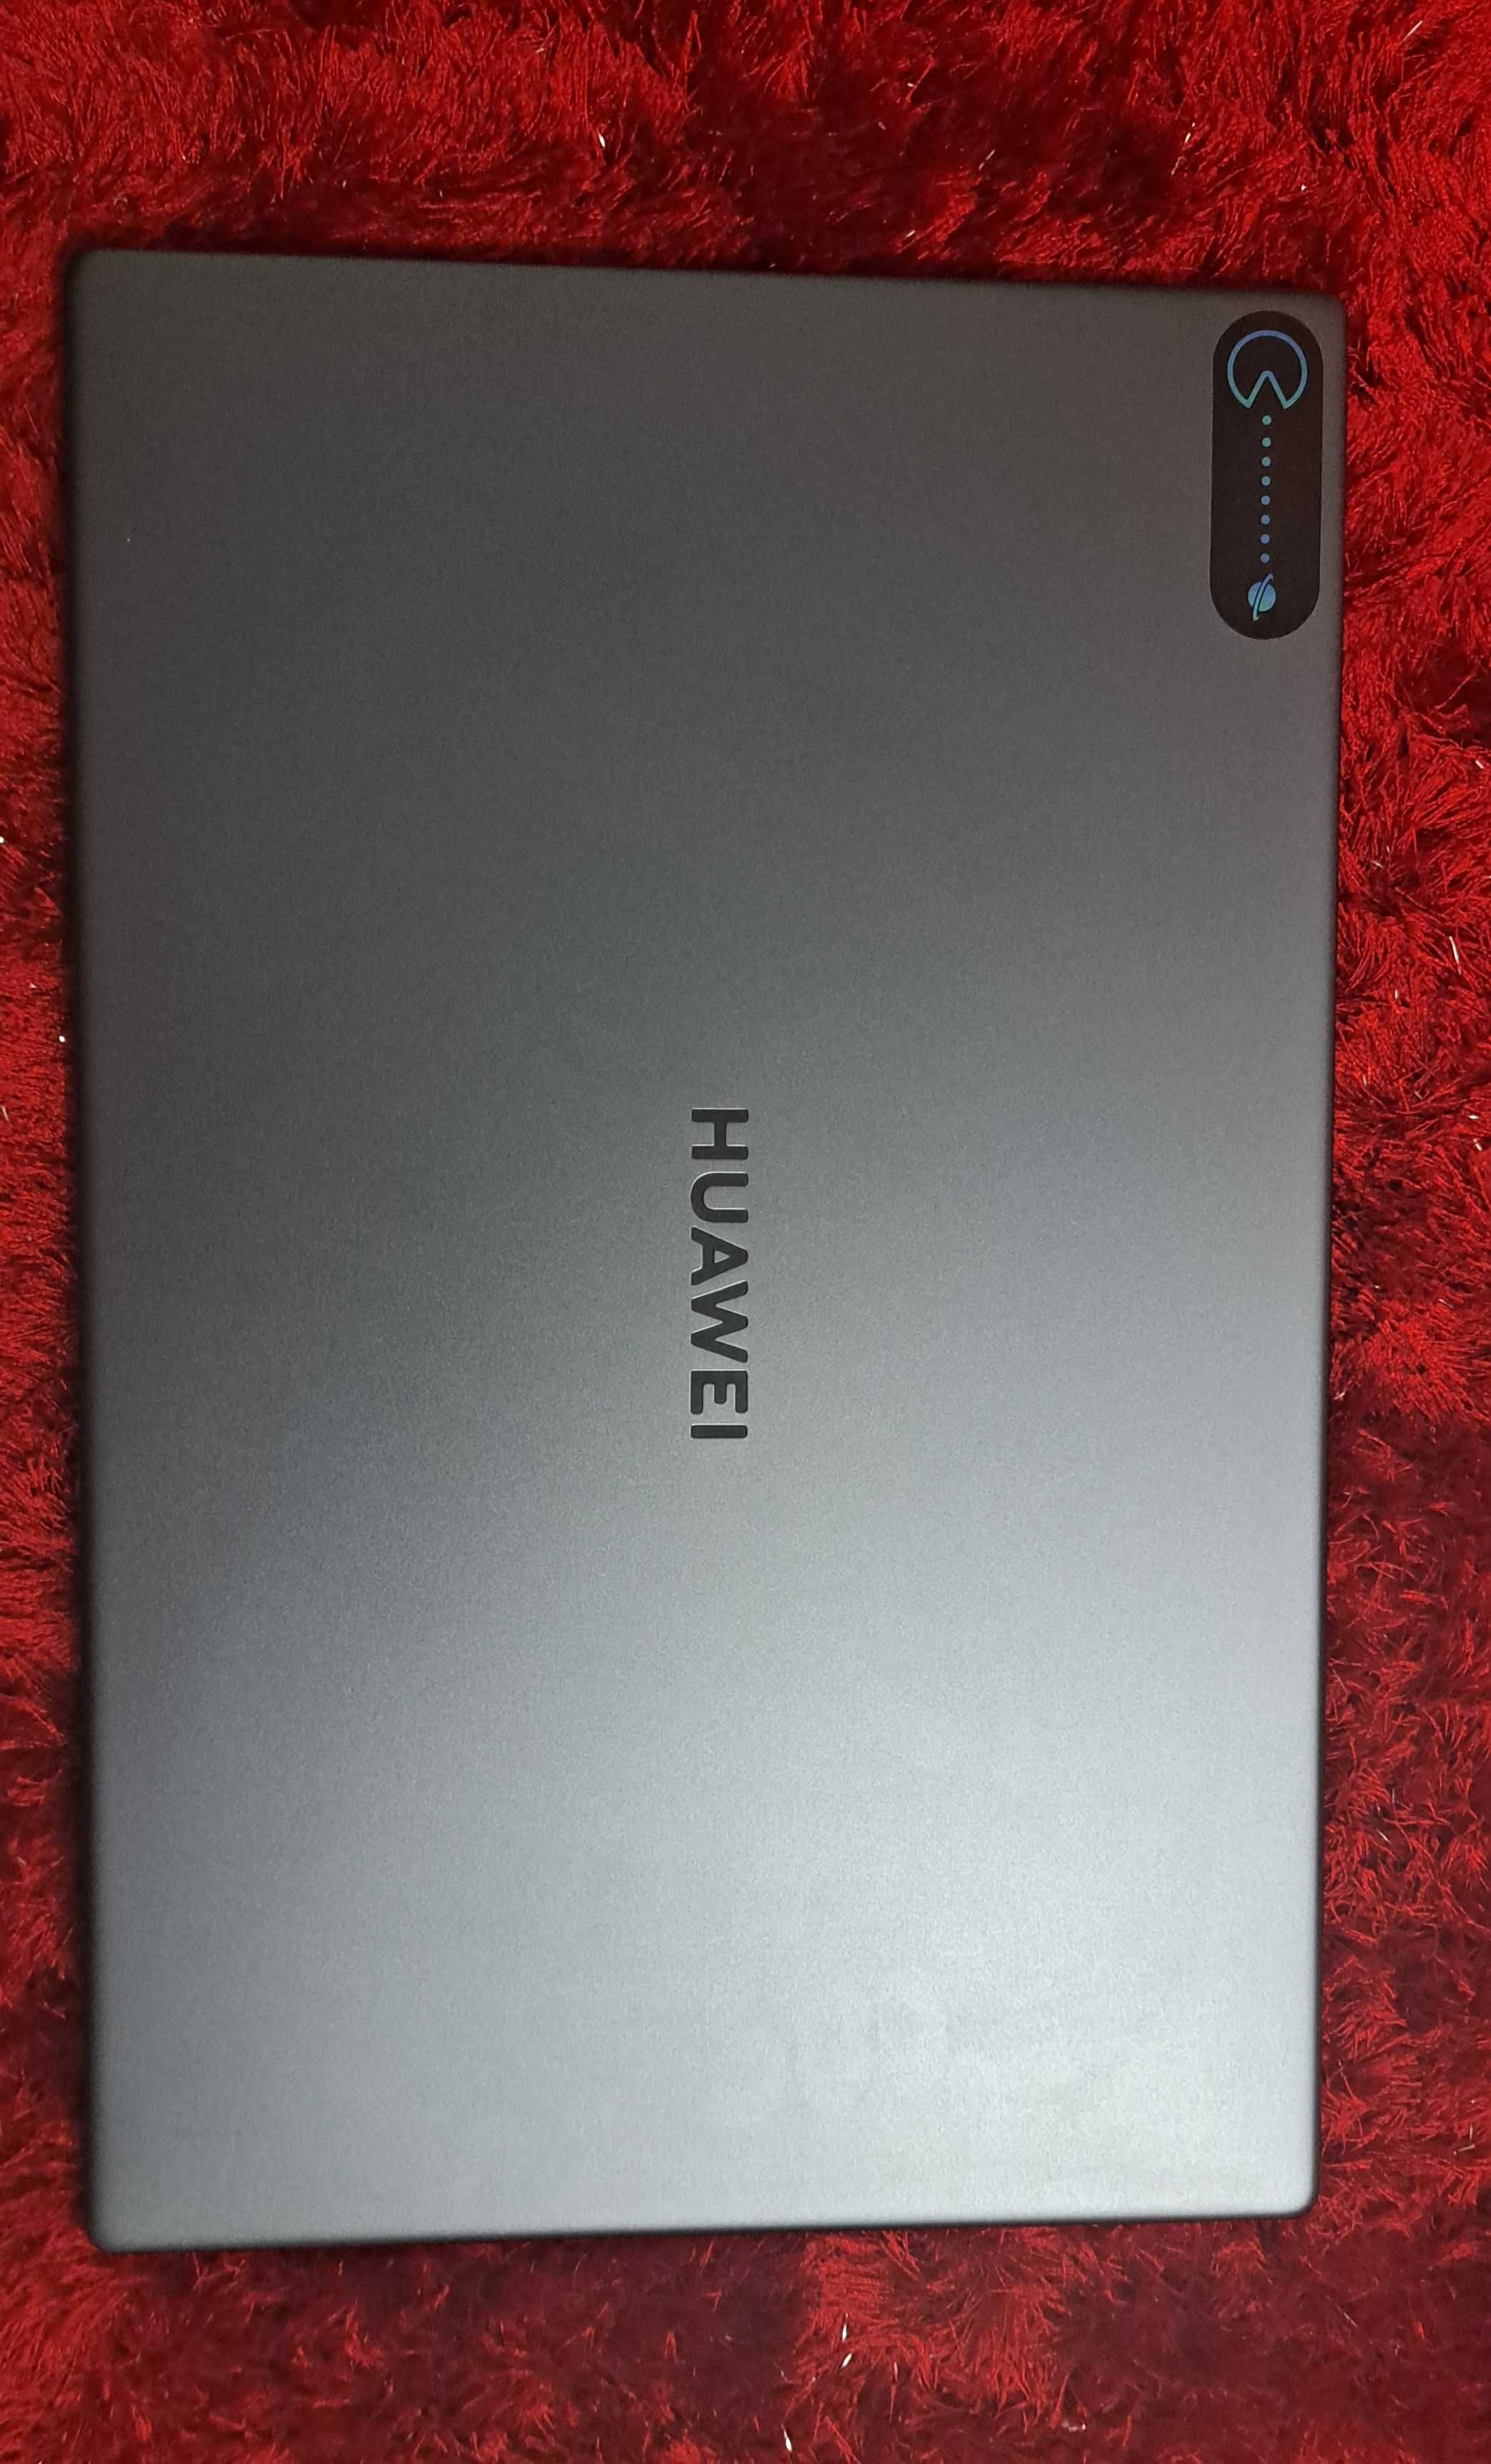 Huawei Matebook D15 AMD Ryzen 5